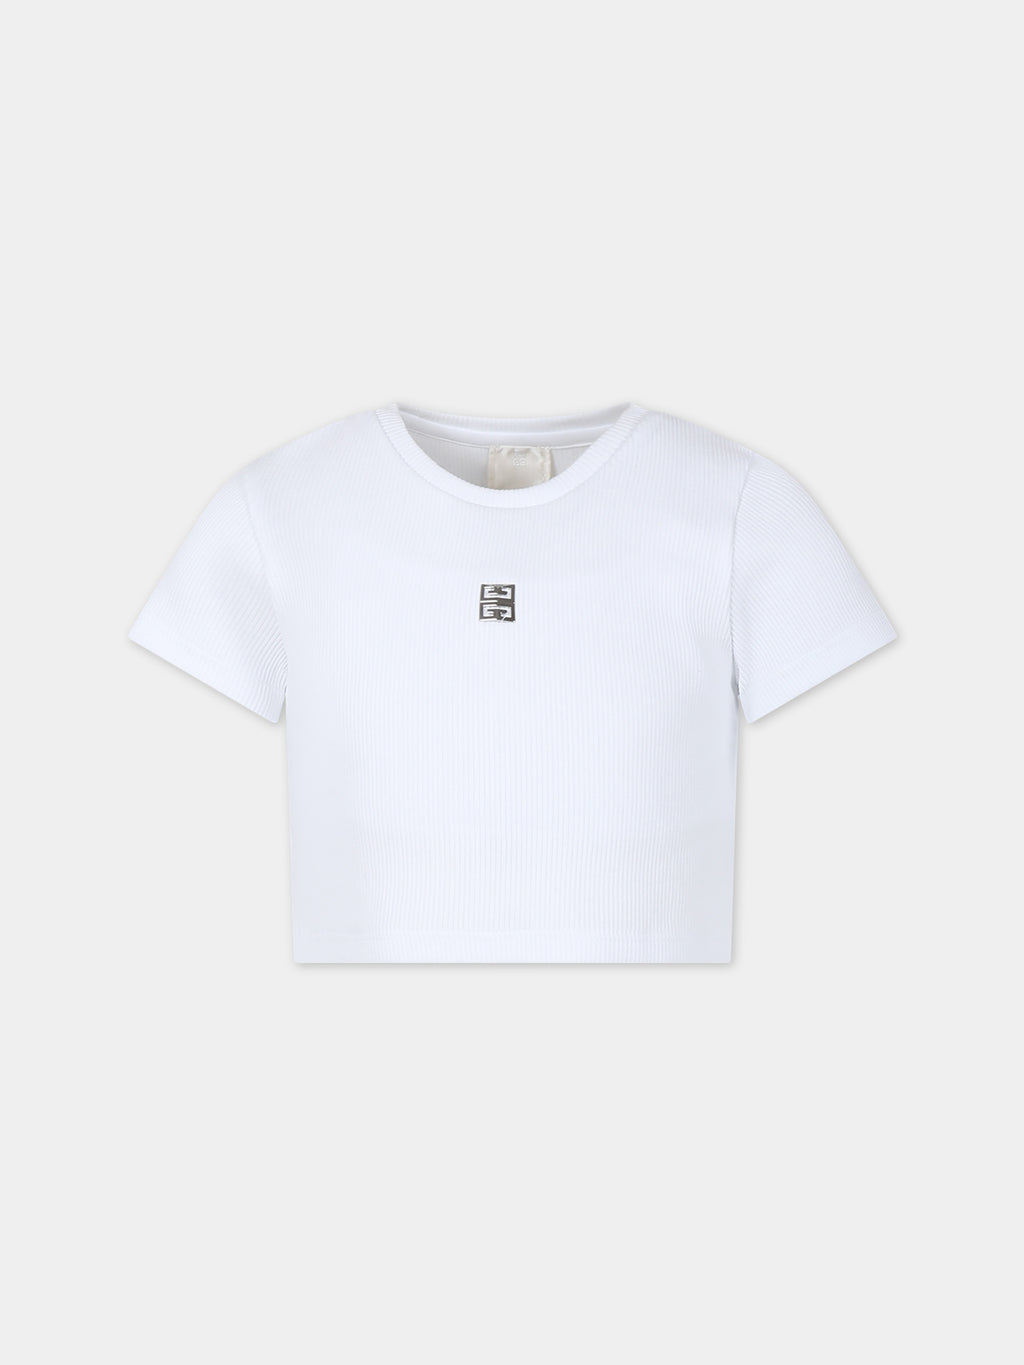 T-shirt blanc pour fille avec motif 4G